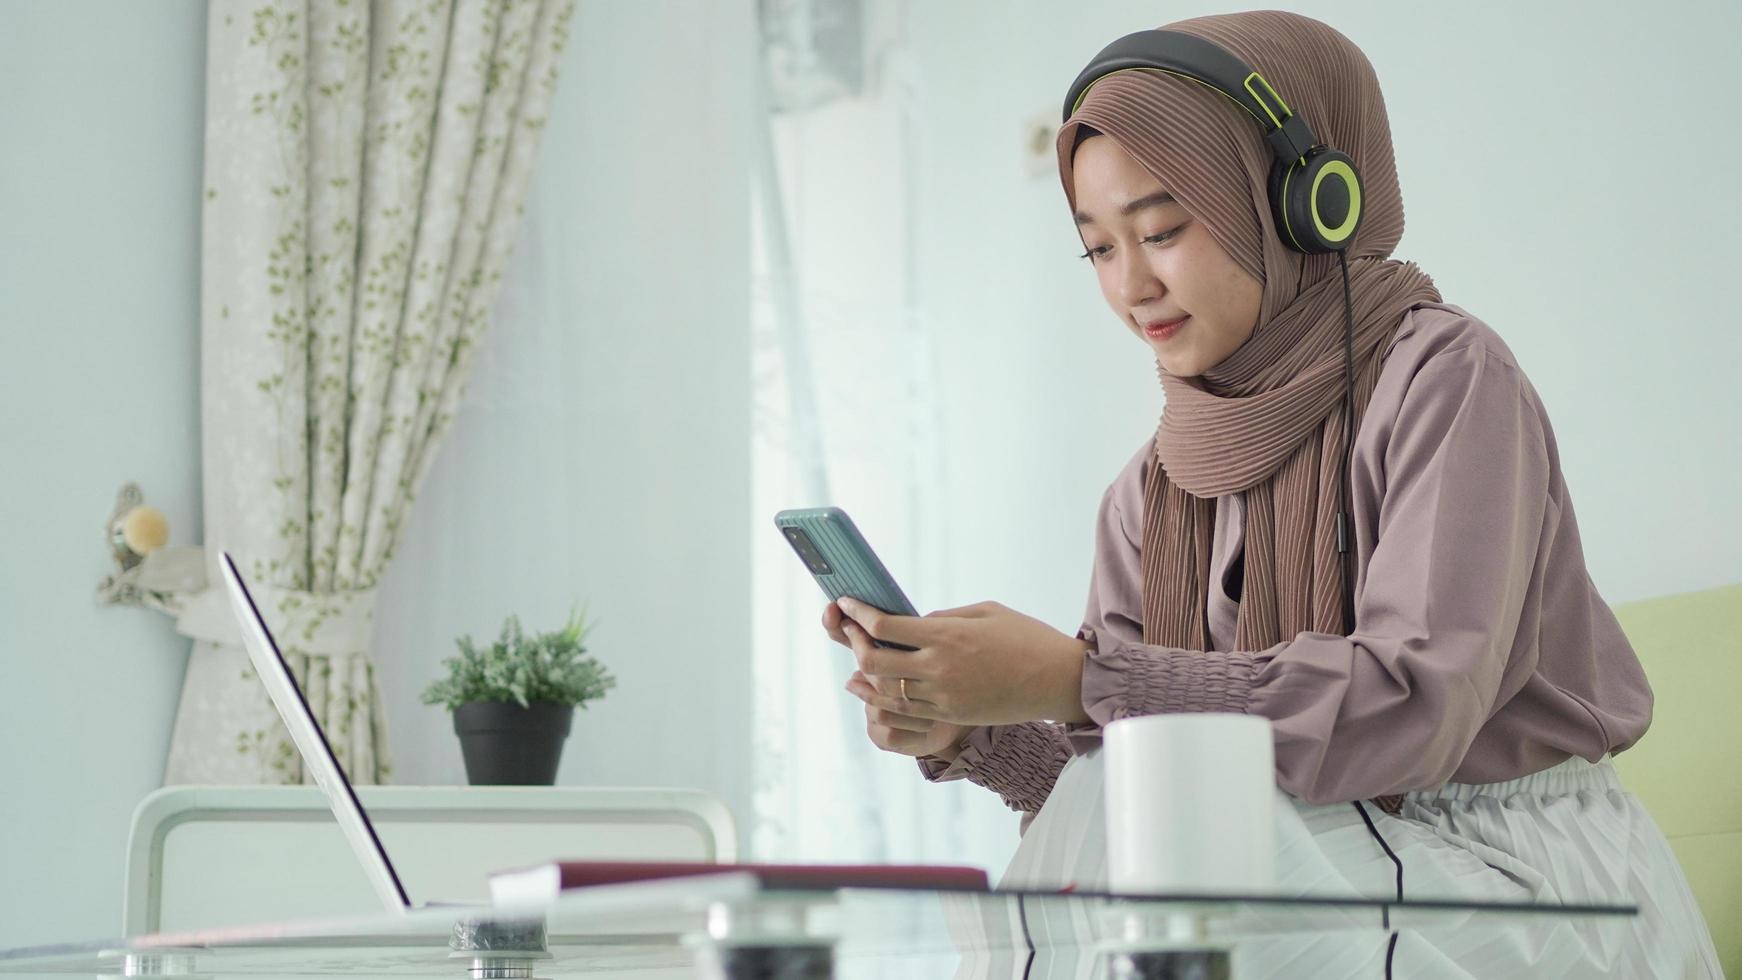 femme asiatique en hijab à la recherche d'inspiration sur smartphone tout en écoutant des écouteurs photo